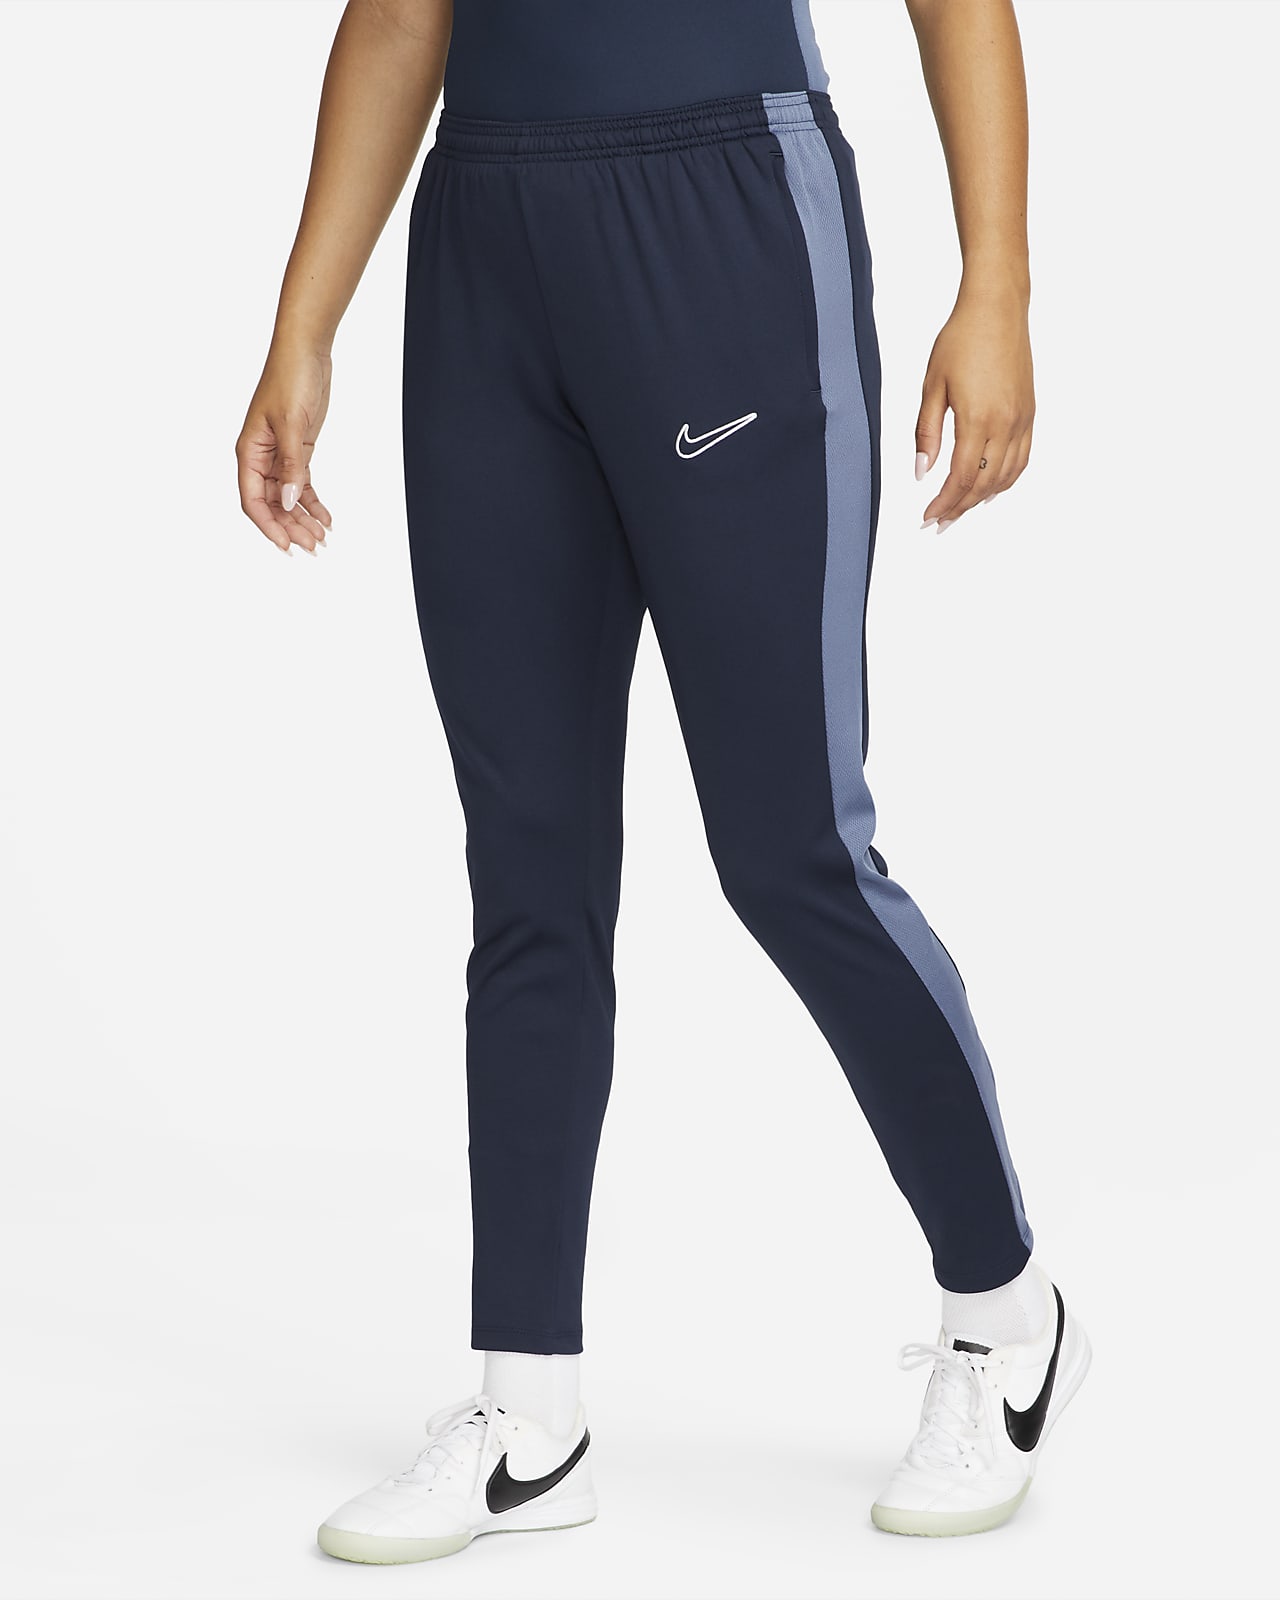 Pants fútbol para mujer Nike Dri-FIT Academy. Nike.com